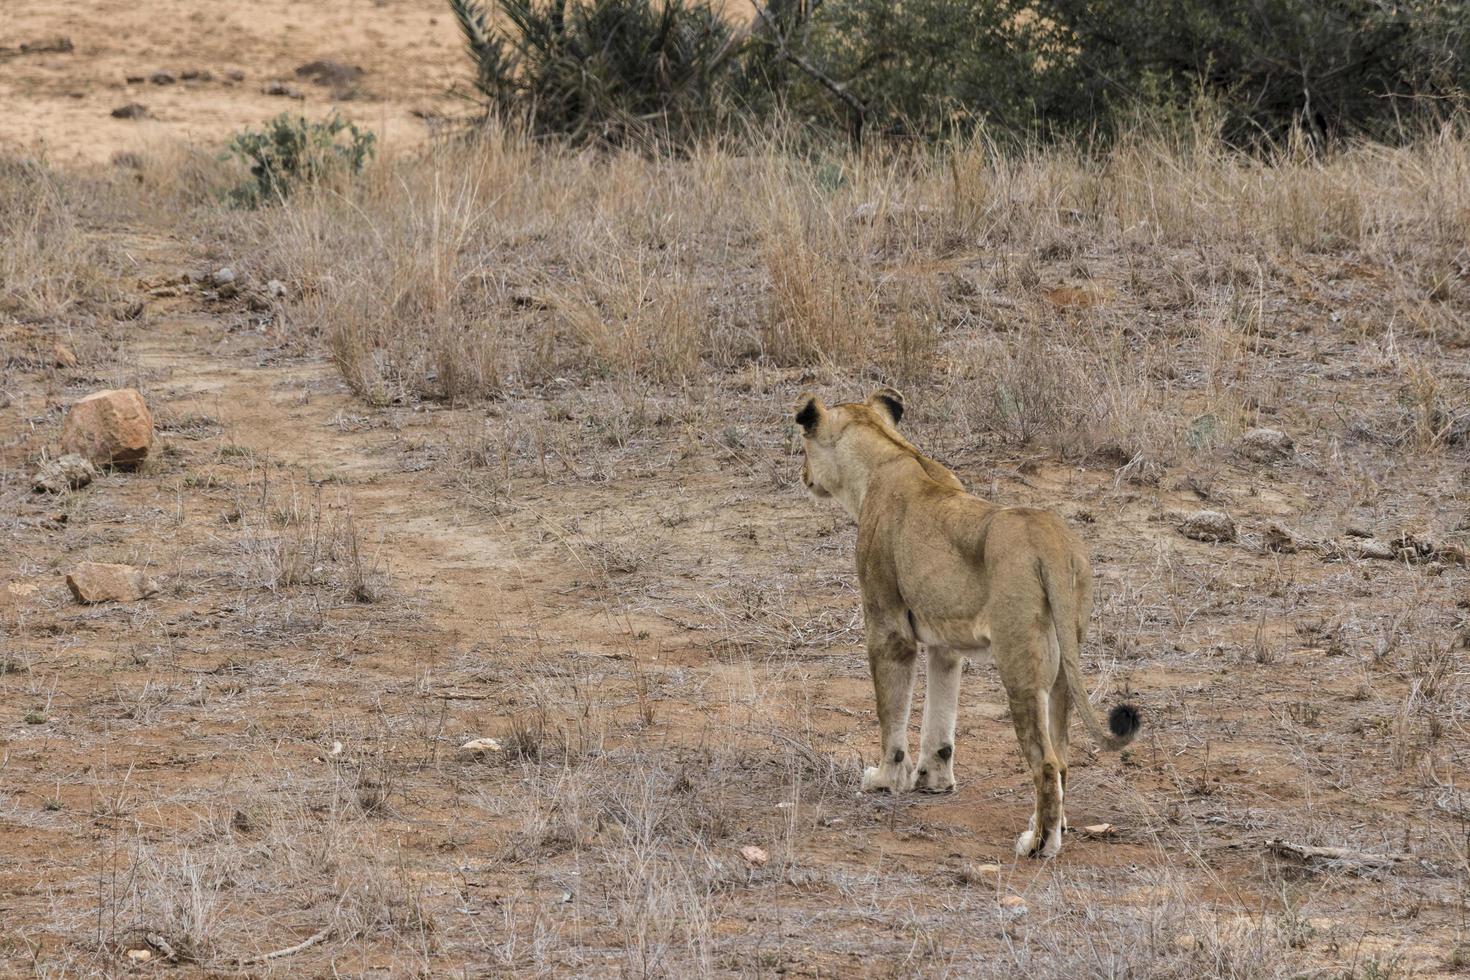 löwe schaut hungrig auf seine beute krüger nationalpark südafrika. foto